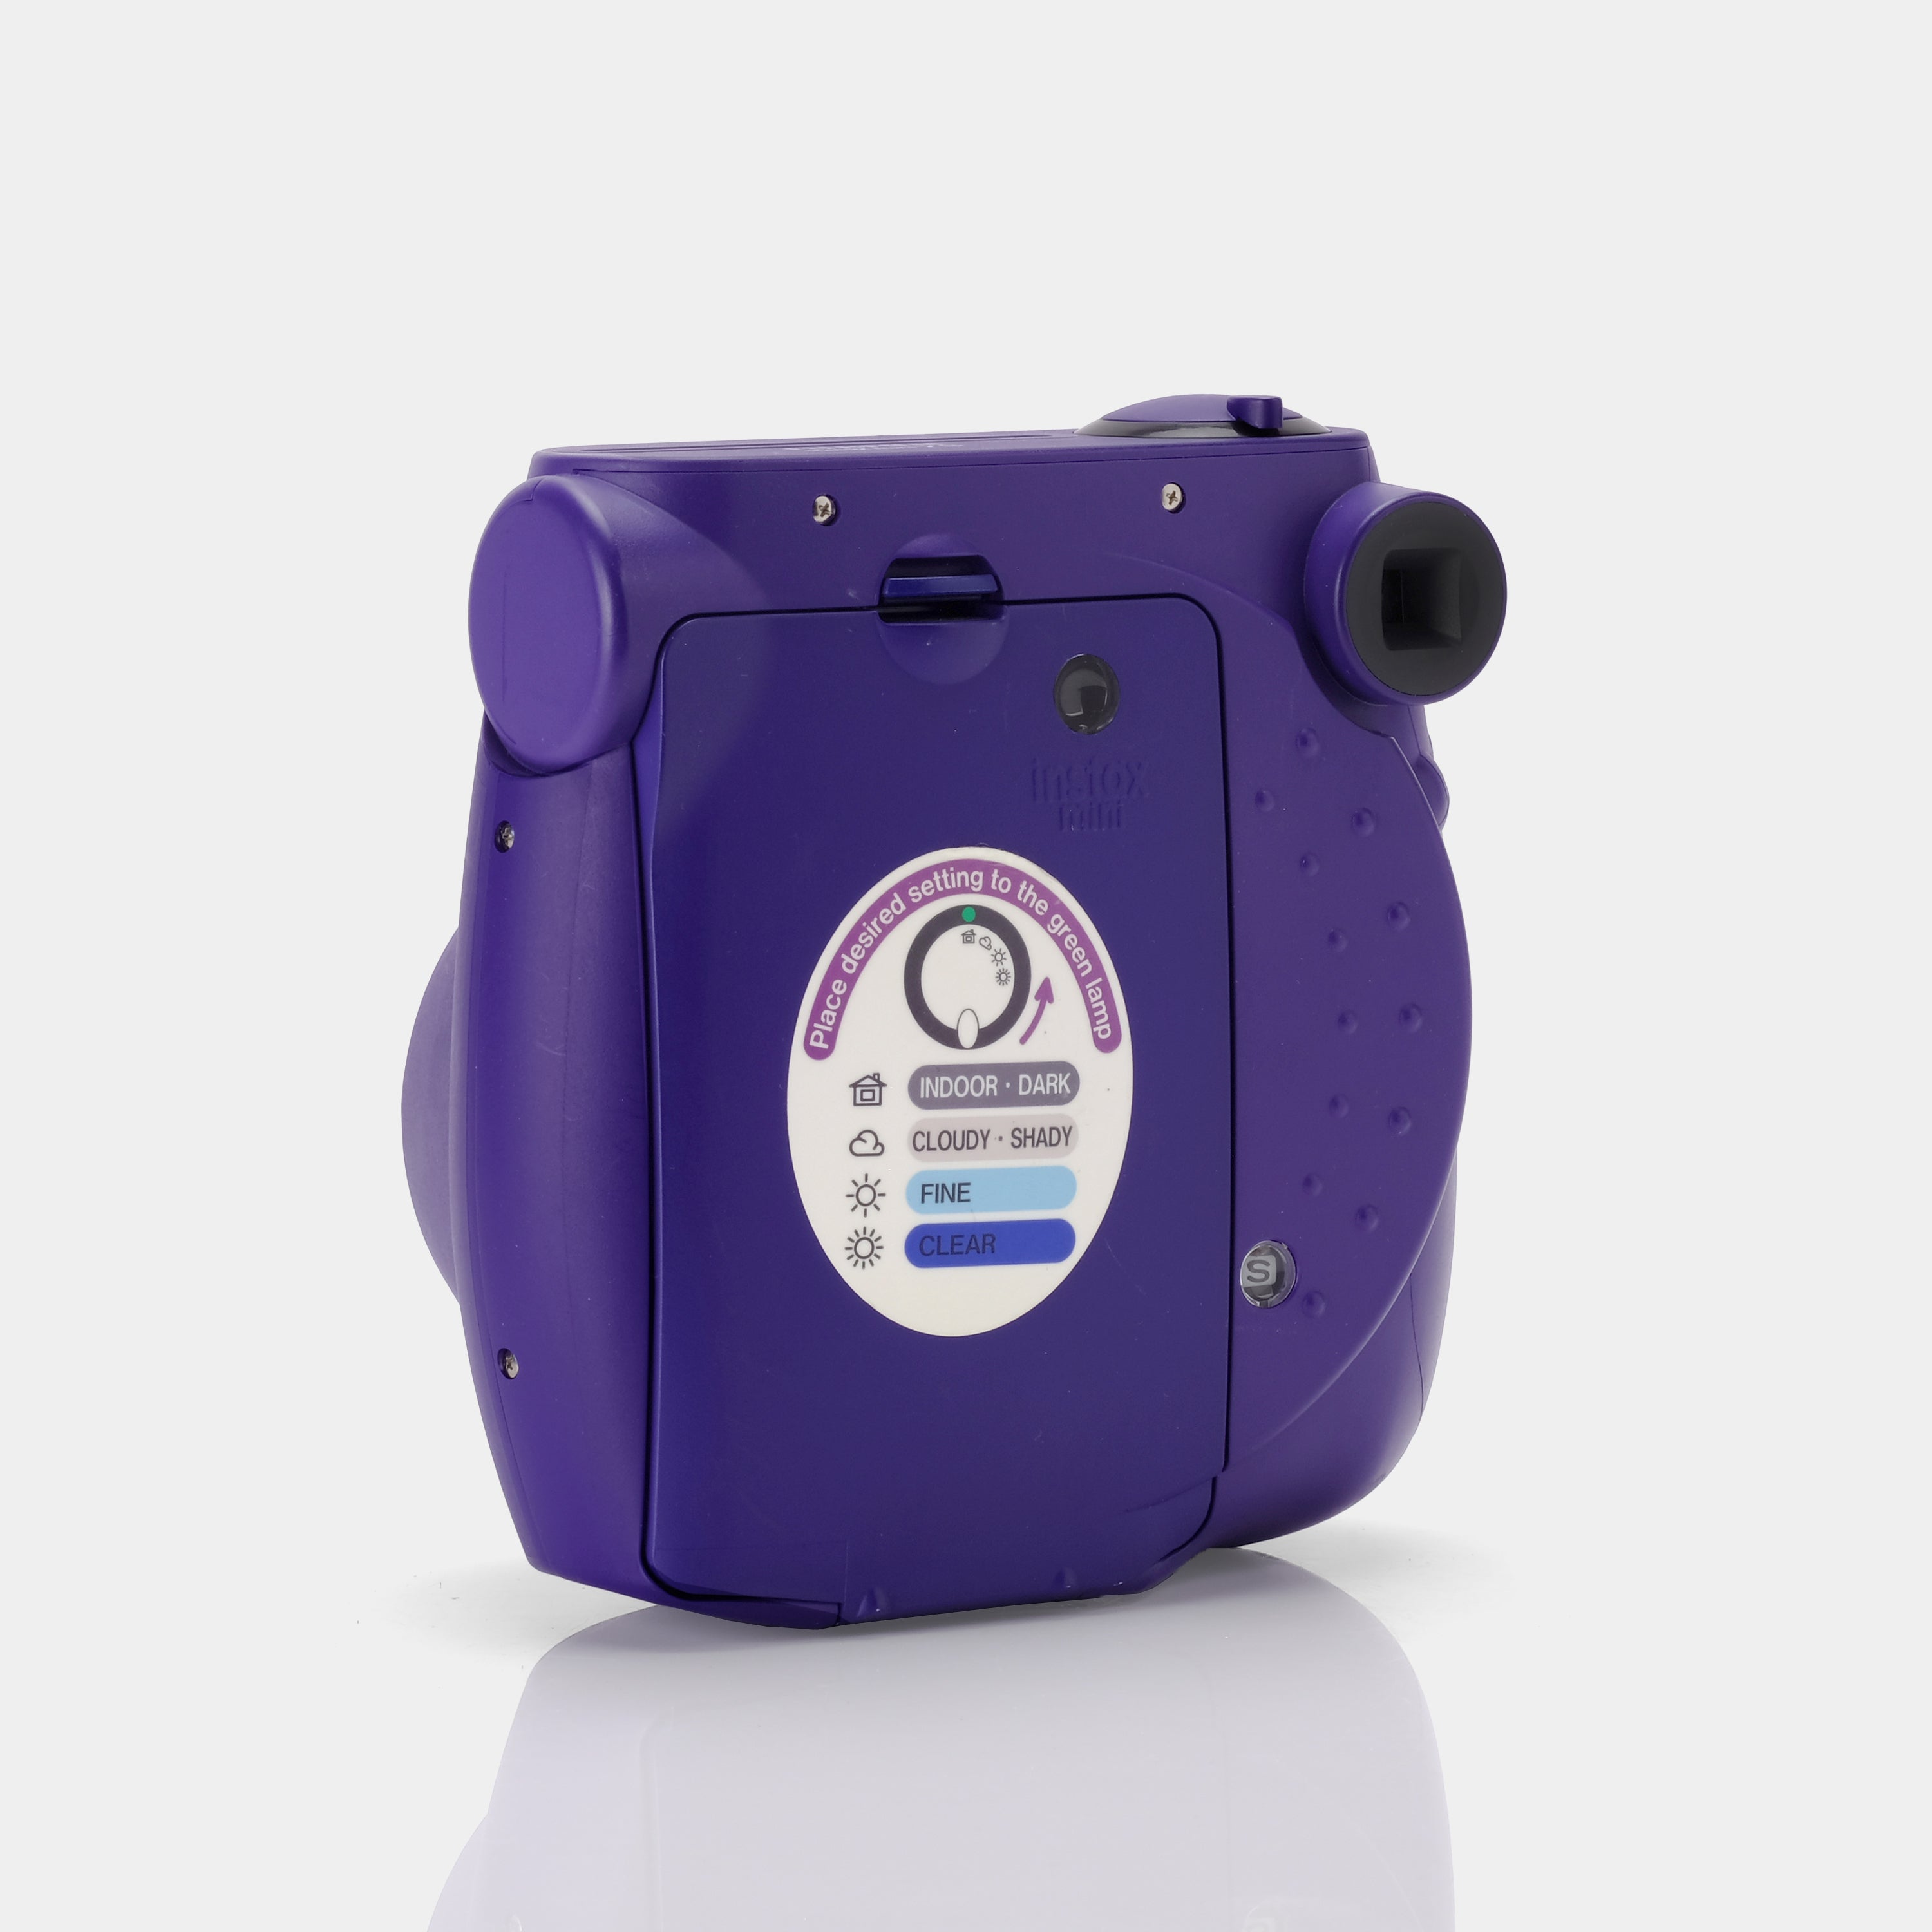 Fujifilm Instax Mini 7S Purple Instant Film Camera - Refurbished